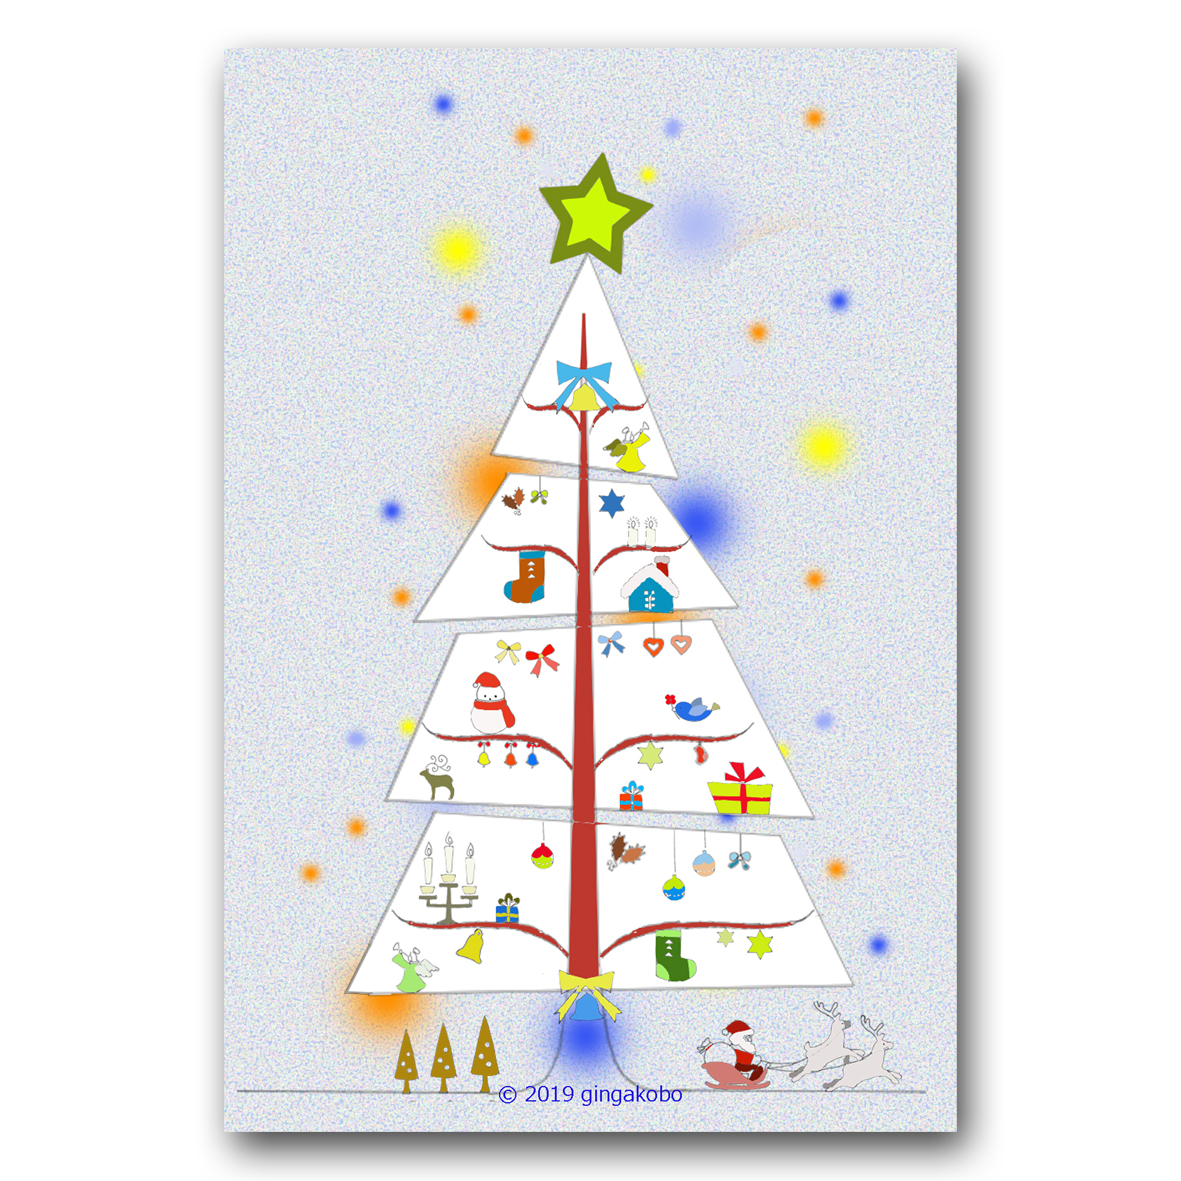 北欧風クリスマスツリー ほっこり癒しのイラストポストカード2枚組 No 888 Iichi ハンドメイド クラフト作品 手仕事品の通販